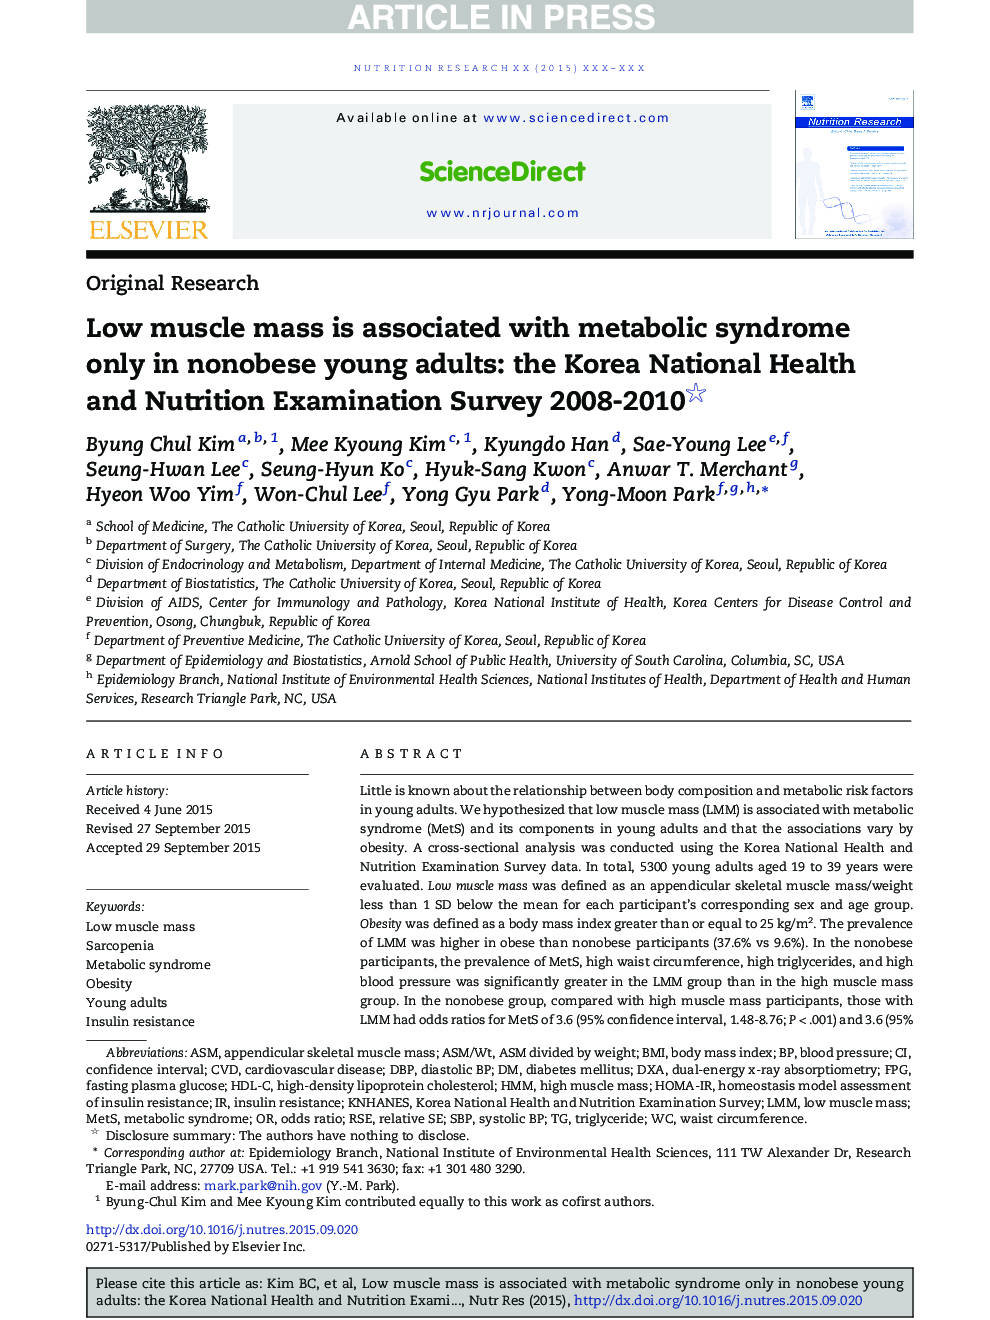 توده عضلانی پایین تنها در افراد جوان غیر بیوپسی سندرم متابولیک همراه است: بررسی سرشماری ملی بهداشت و تغذیه سال 2008-2010 